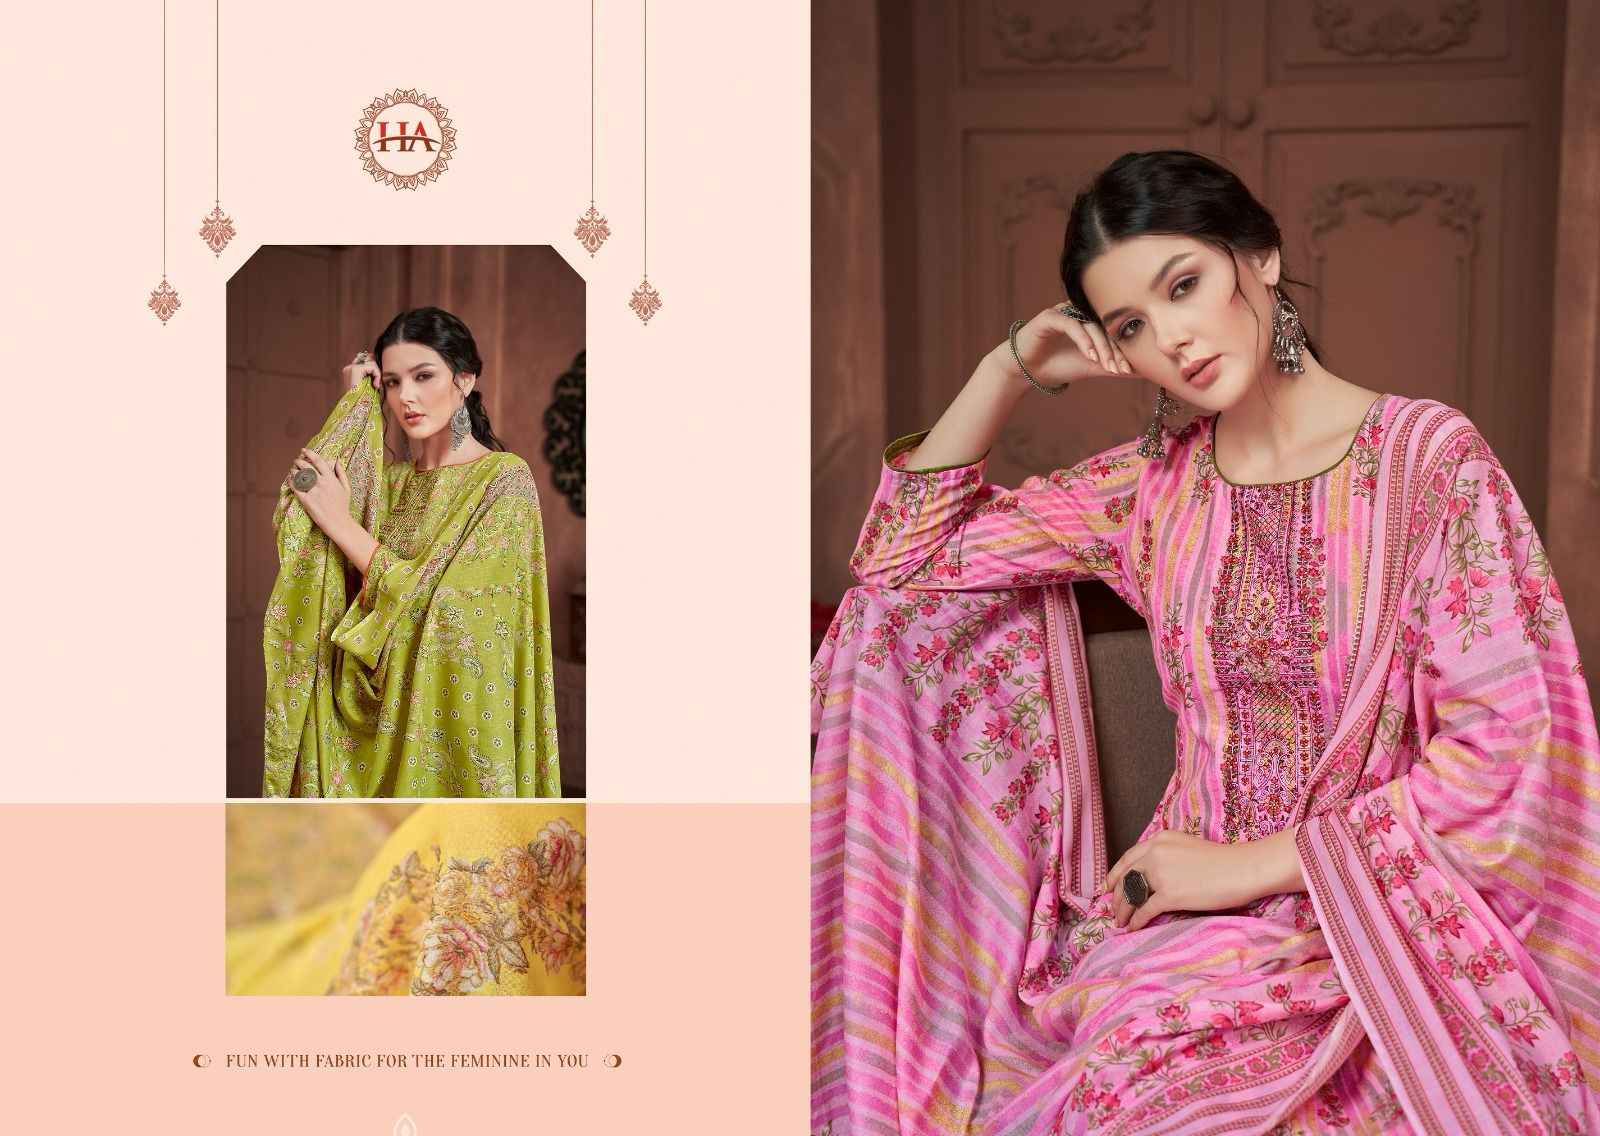 Harshit Roshni Vol-2 Pure Cotton Dress Material (8 Pc Catalog)